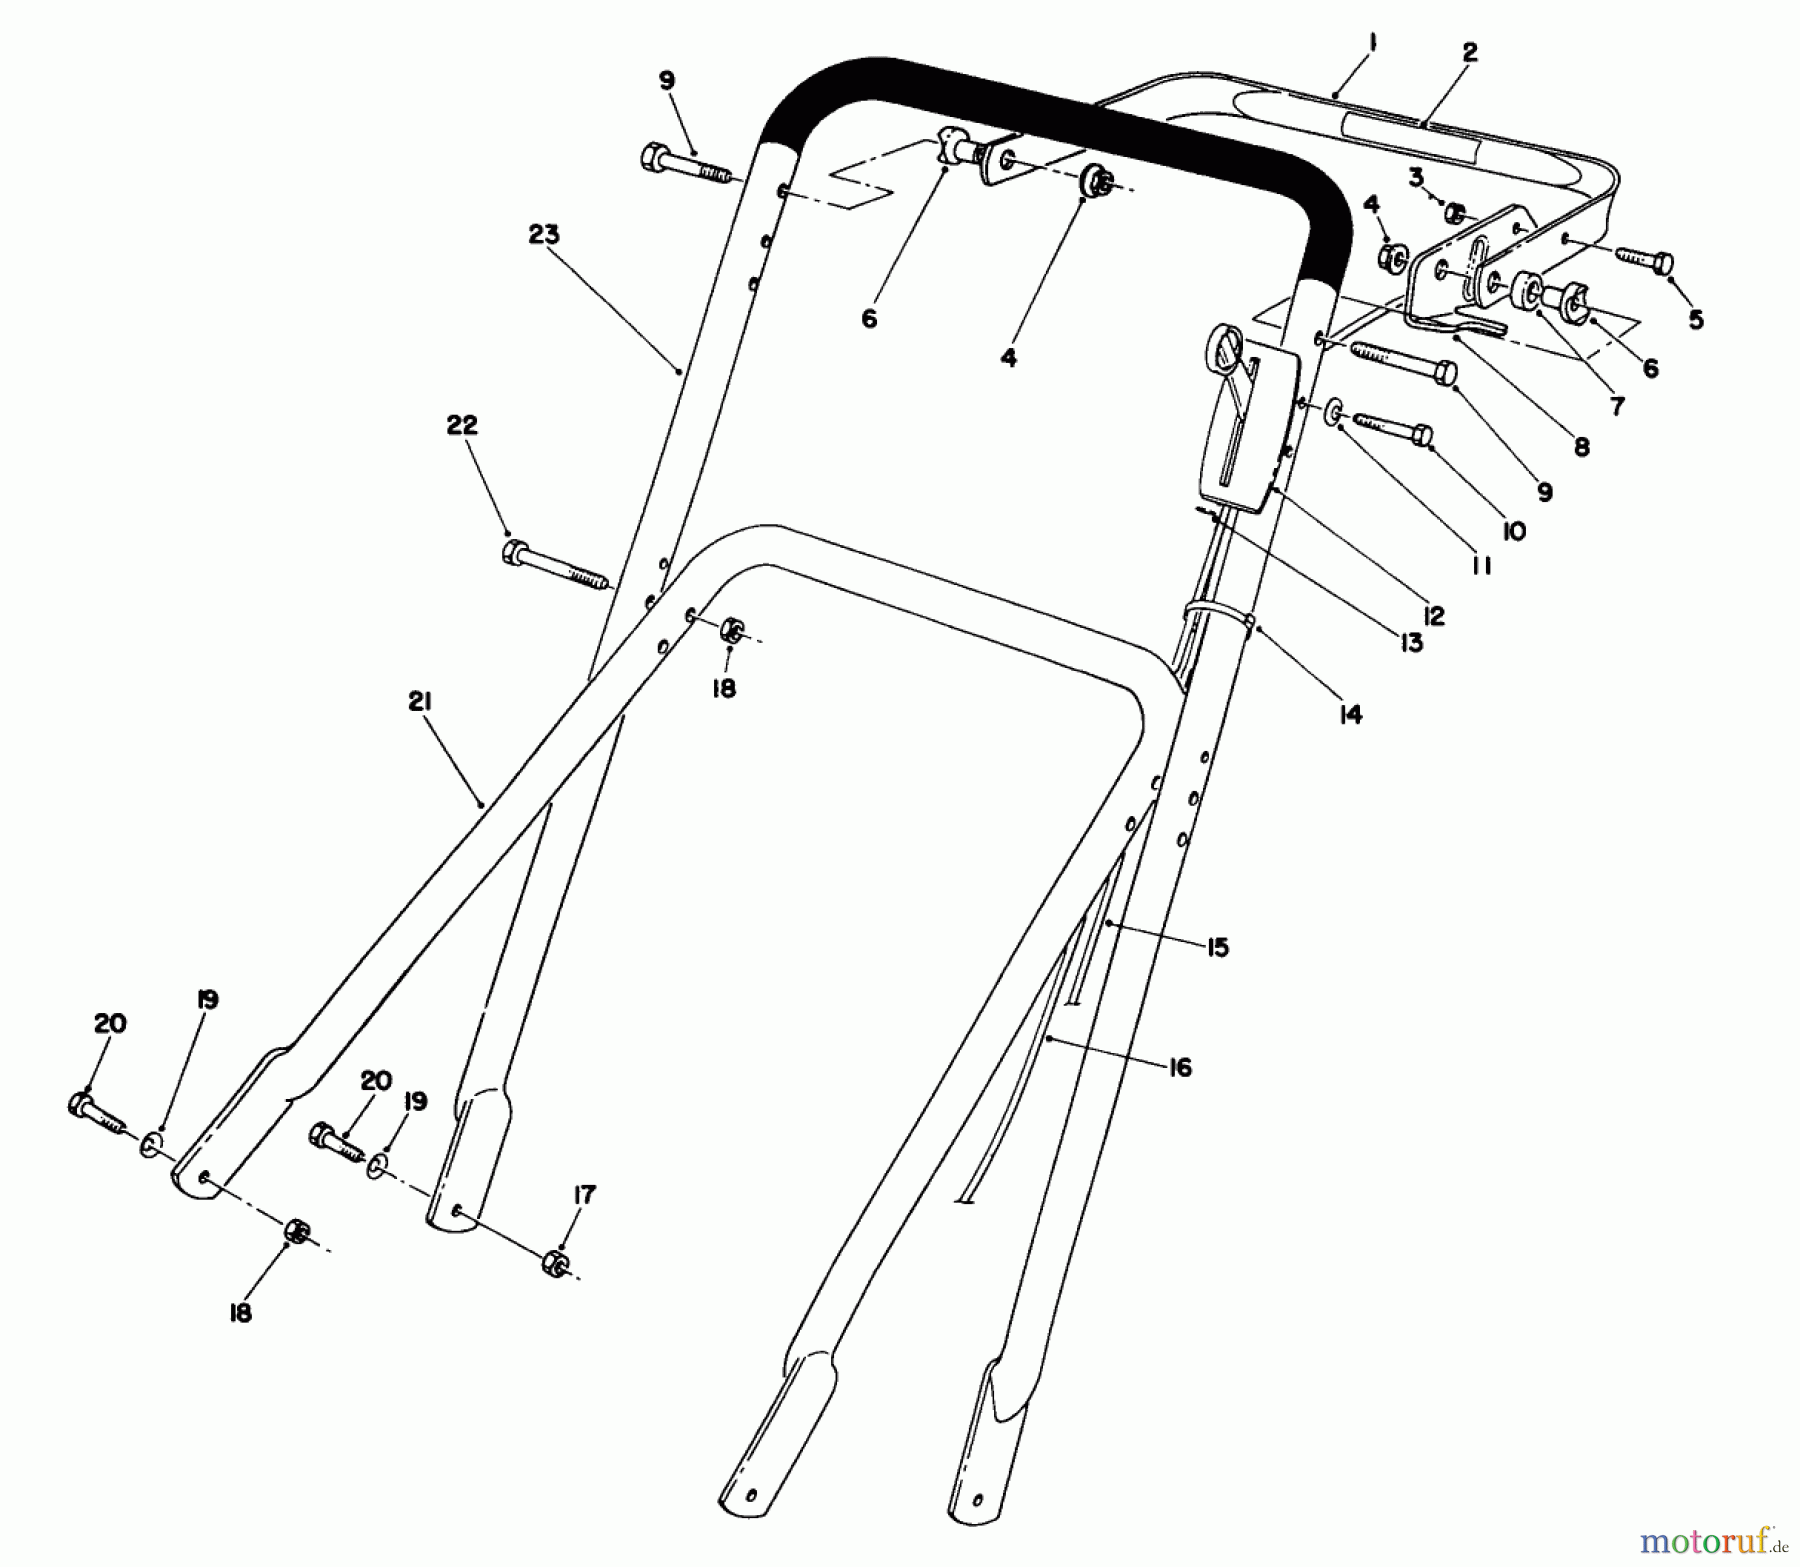  Toro Neu Mowers, Walk-Behind Seite 2 22700 - Toro Lawnmower, 1991 (1000001-1999999) HANDLE ASSEMBLY